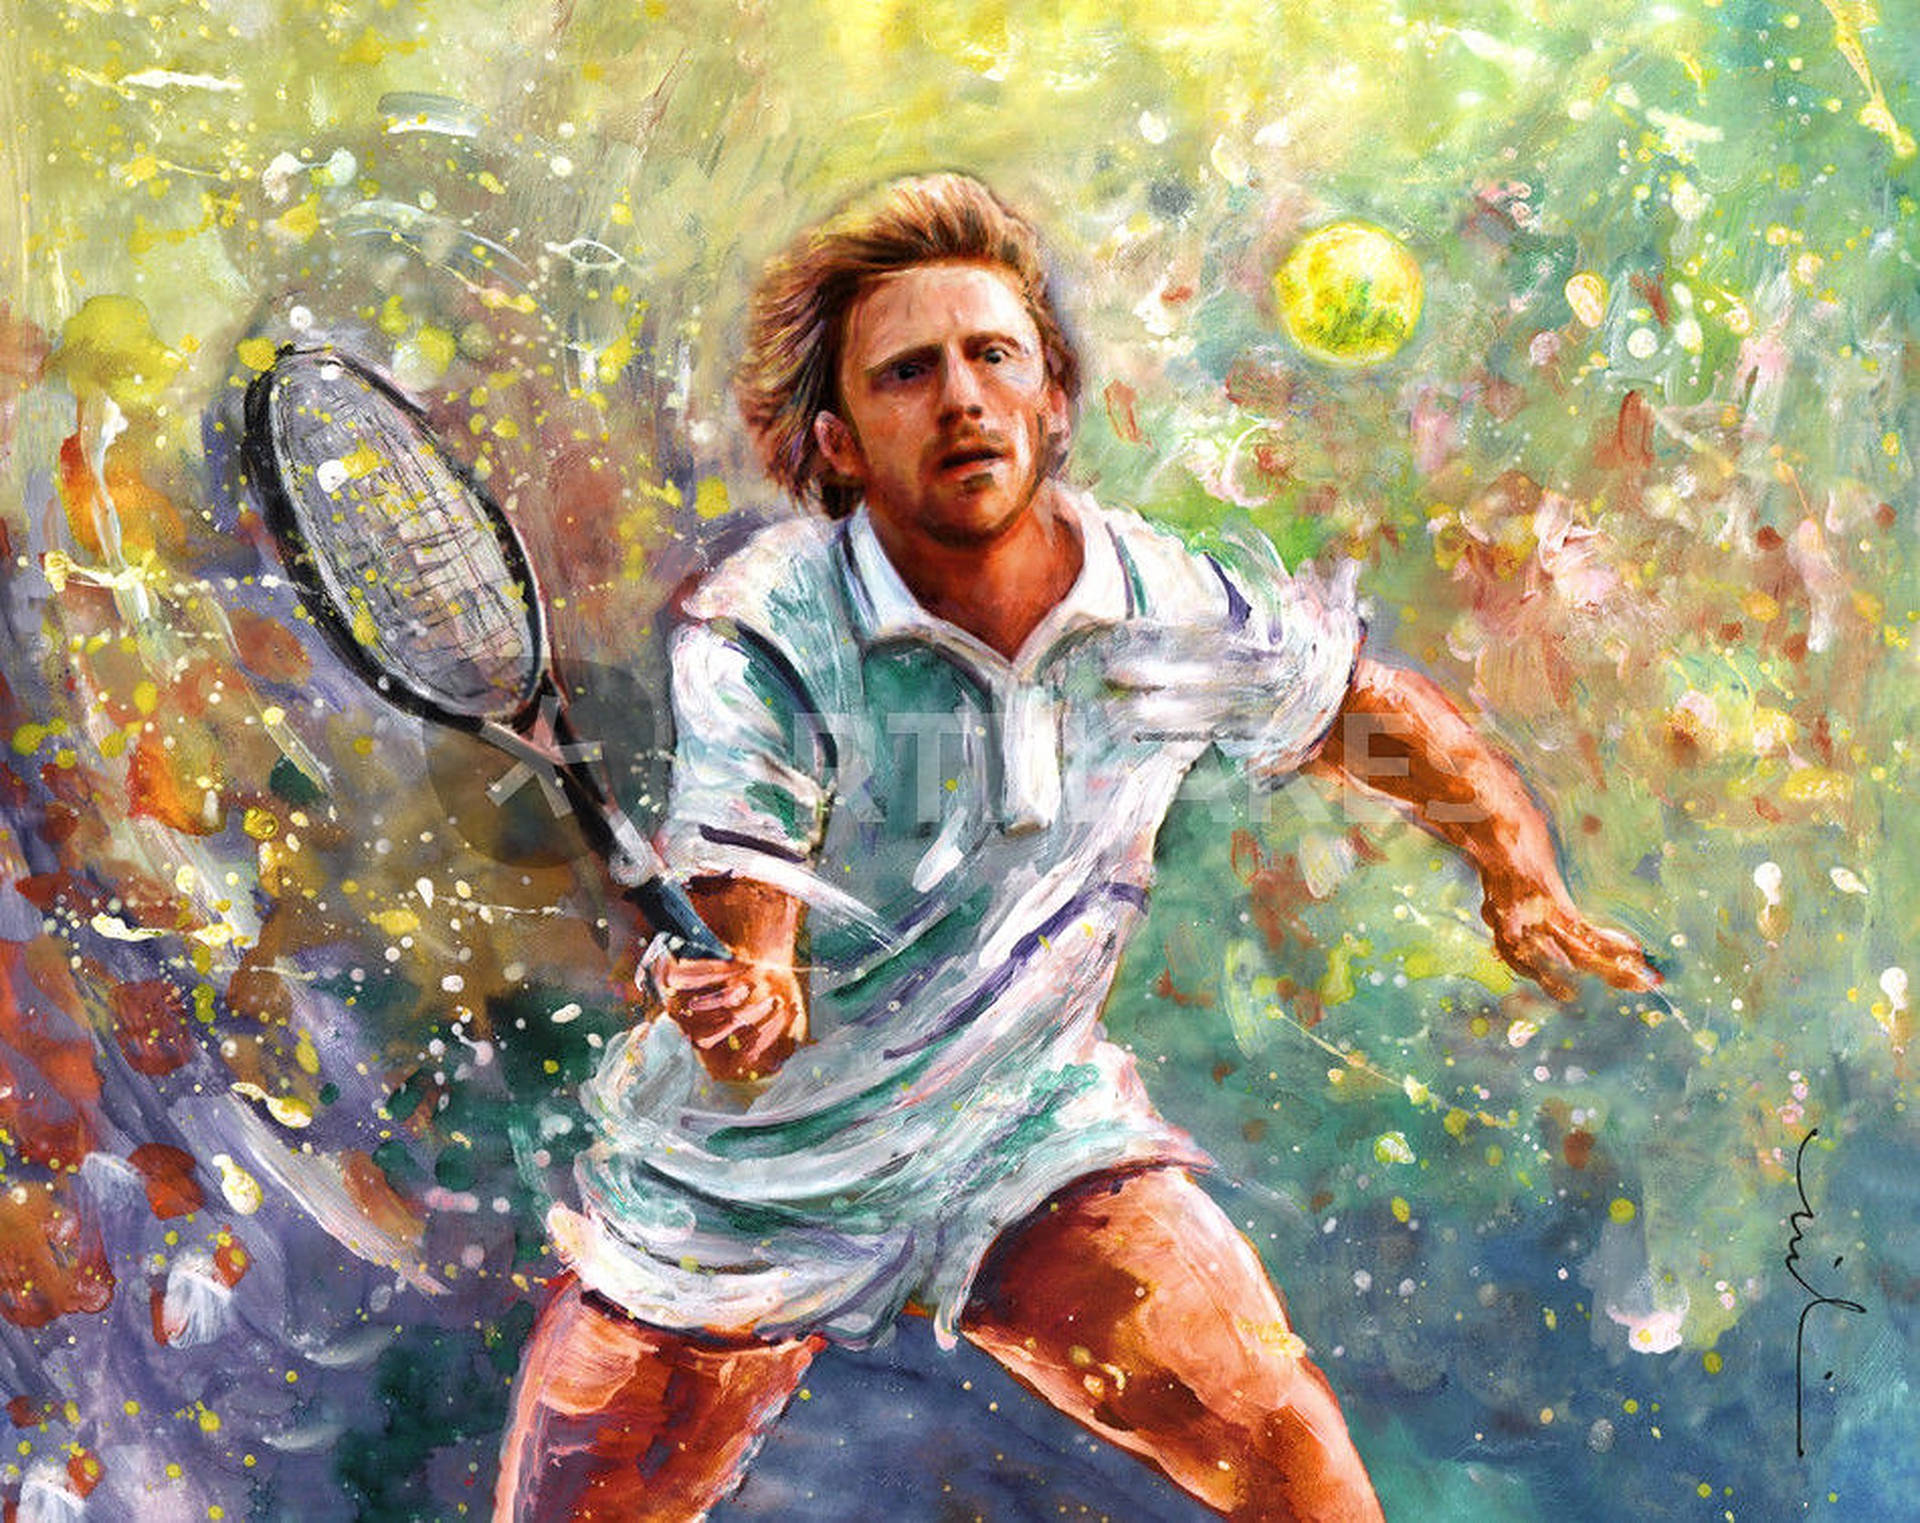 Tennis Legend Boris Becker's Powerful Forehand Background